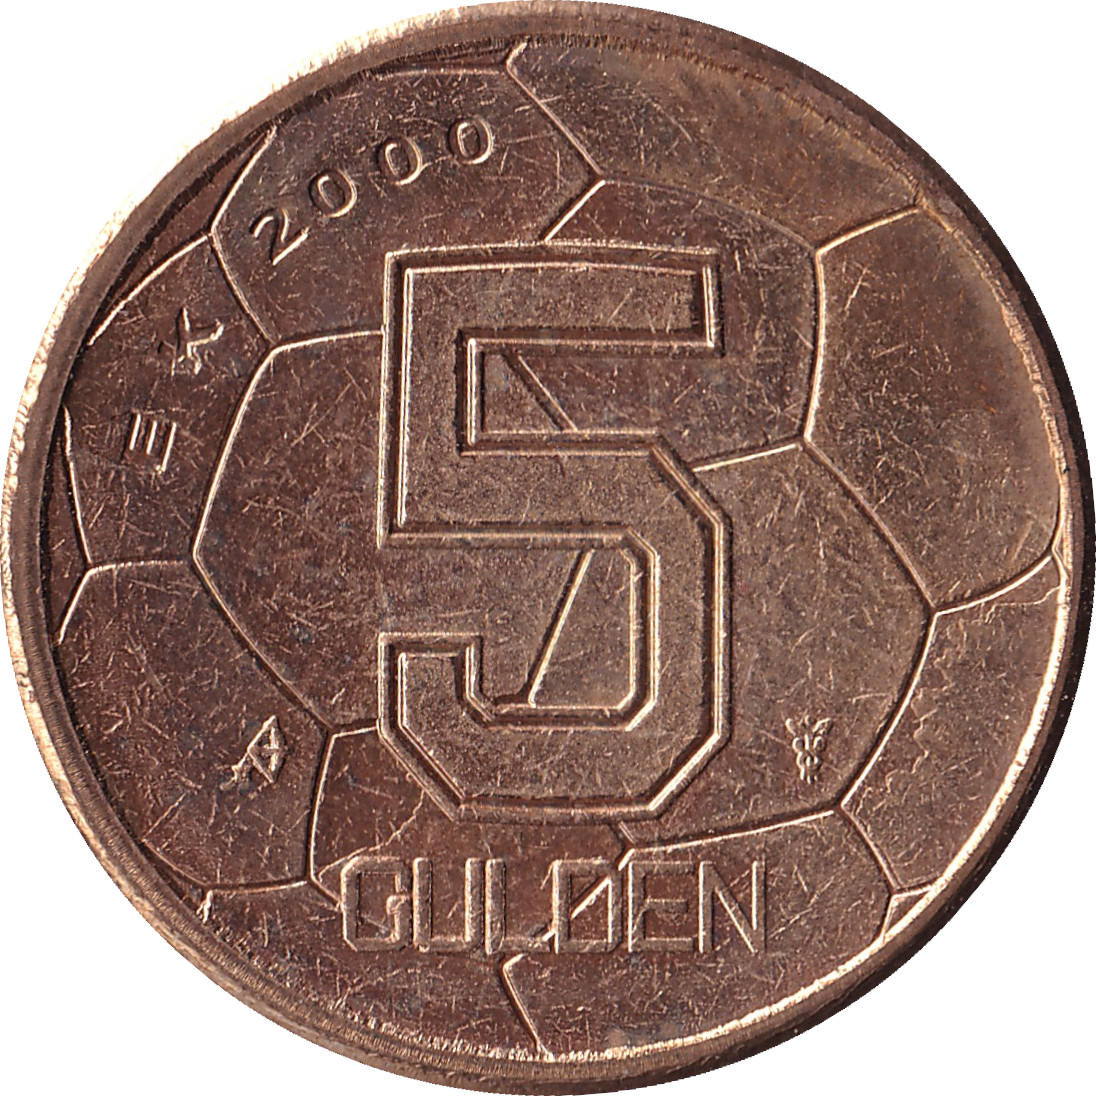 5 gulden - Euro 2000